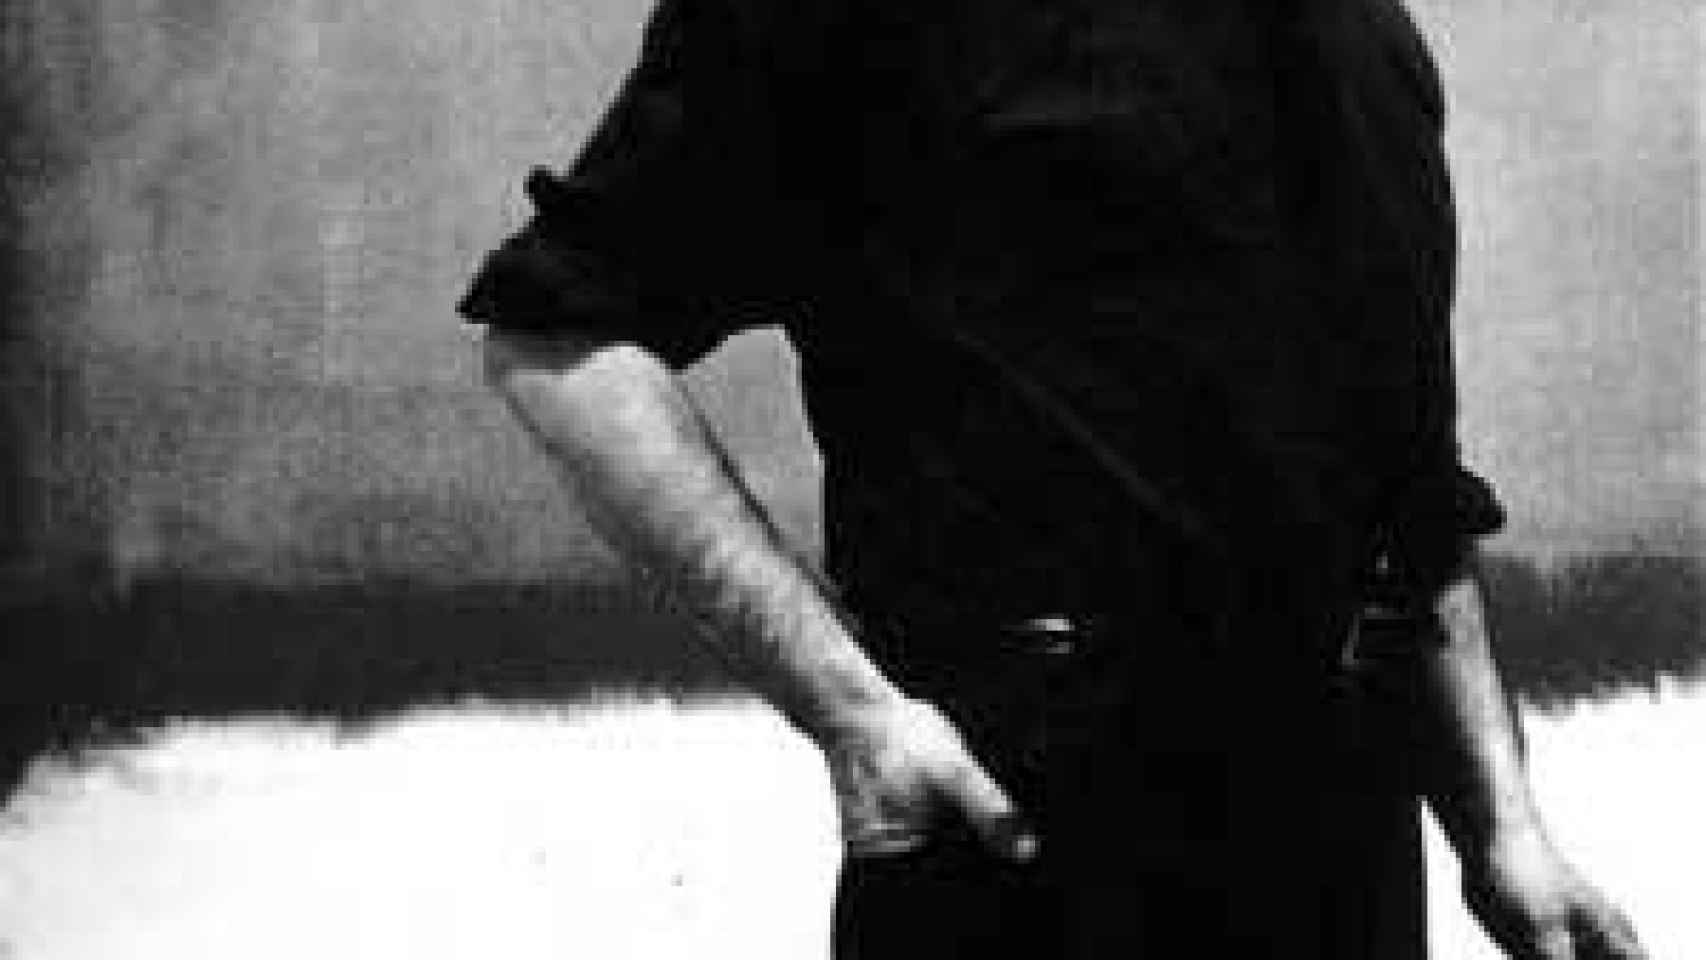 Image: La emoción religiosa de Rothko